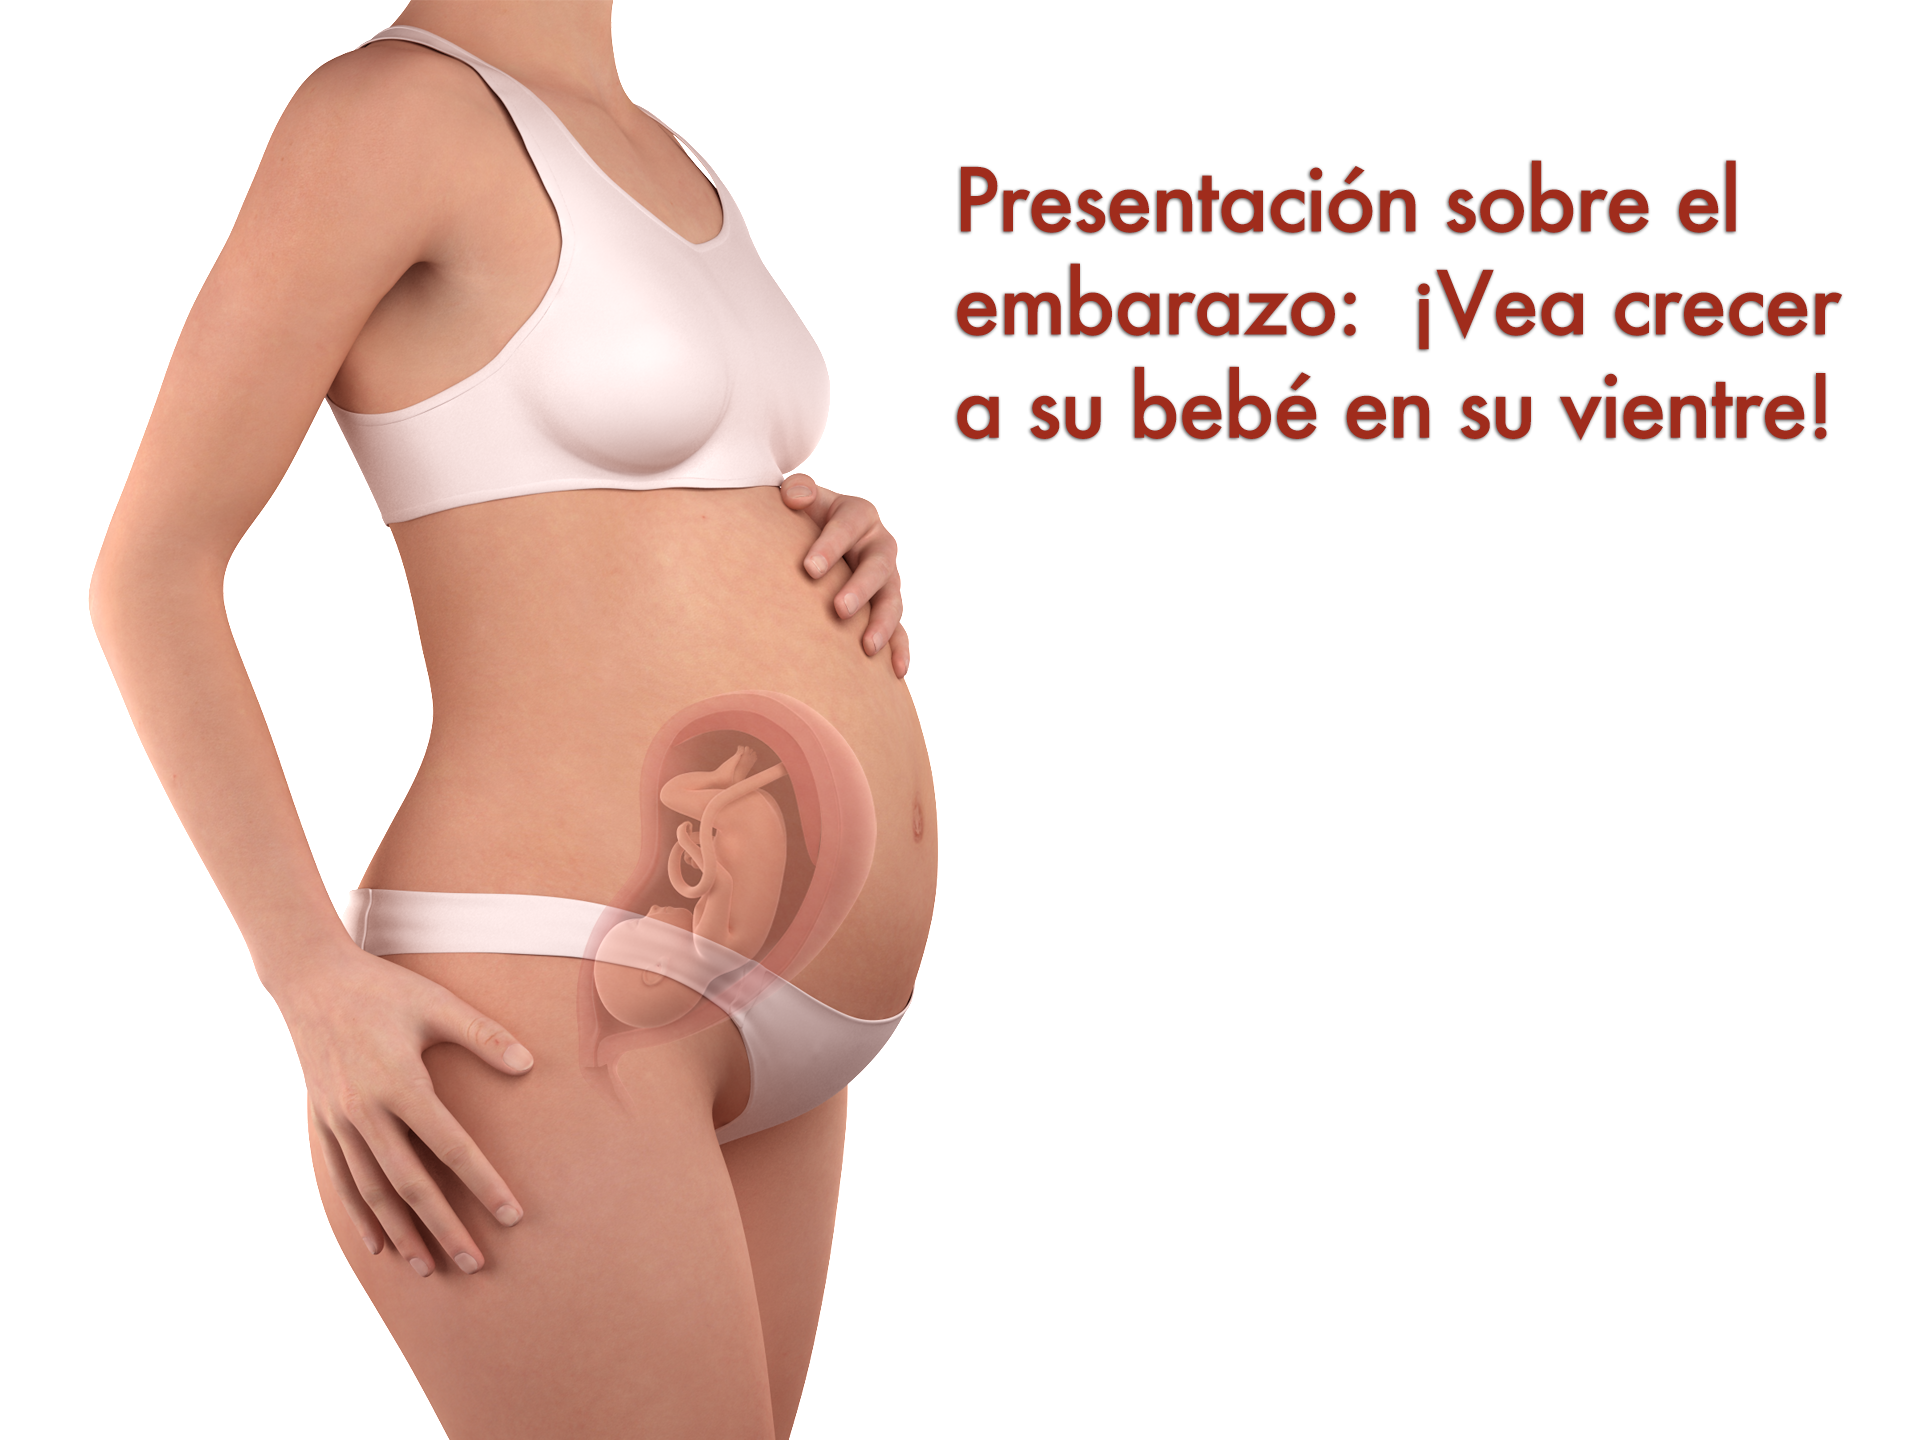 ¿Sabe qué cambios esperar durante el embarazo? ¡Vea esta presentación de diapositivas para averiguarlo!